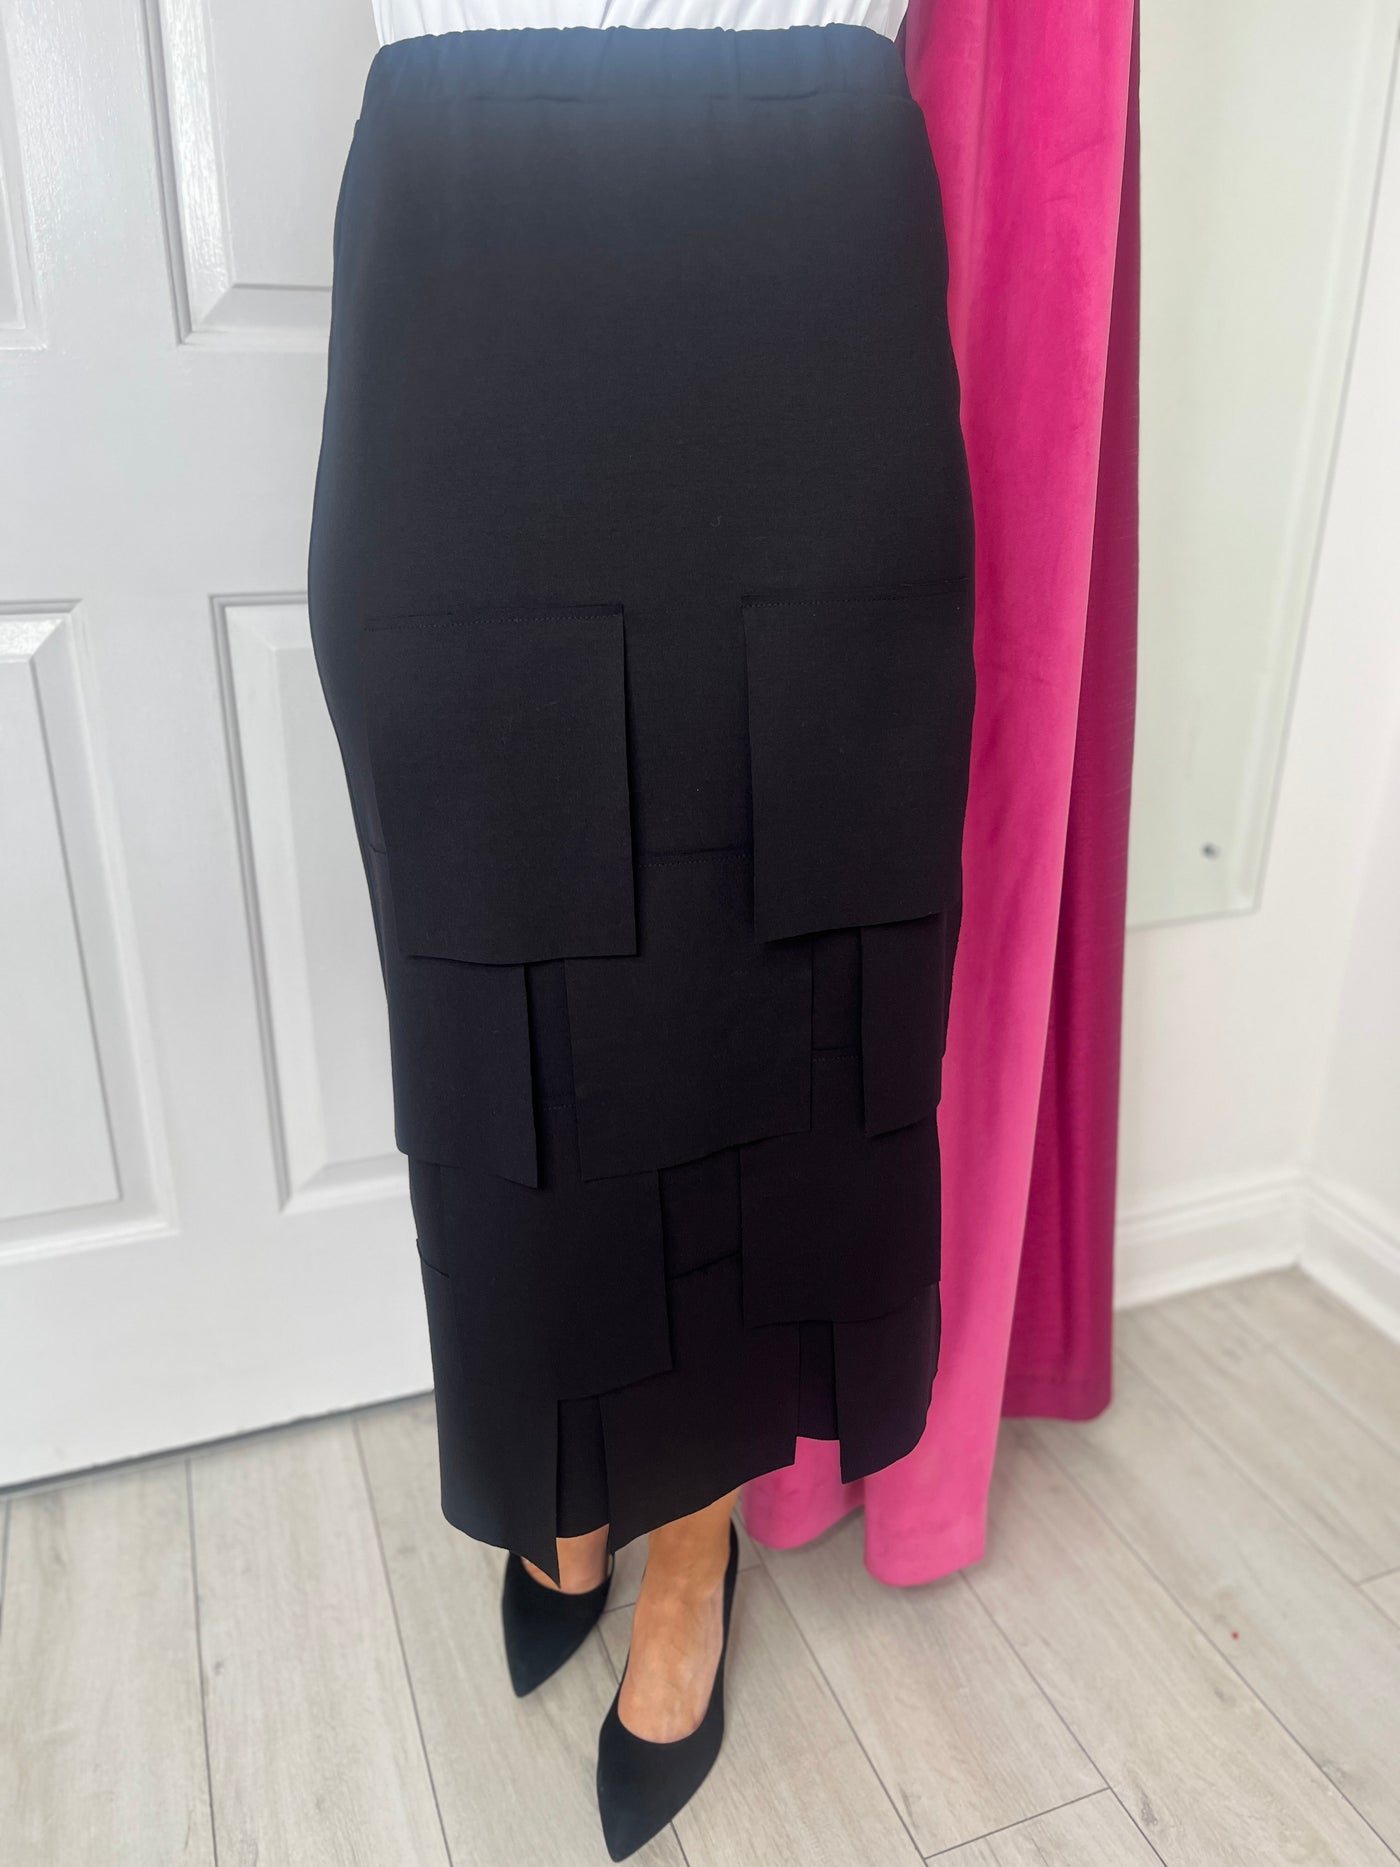 Black Skirt With Square Tassles